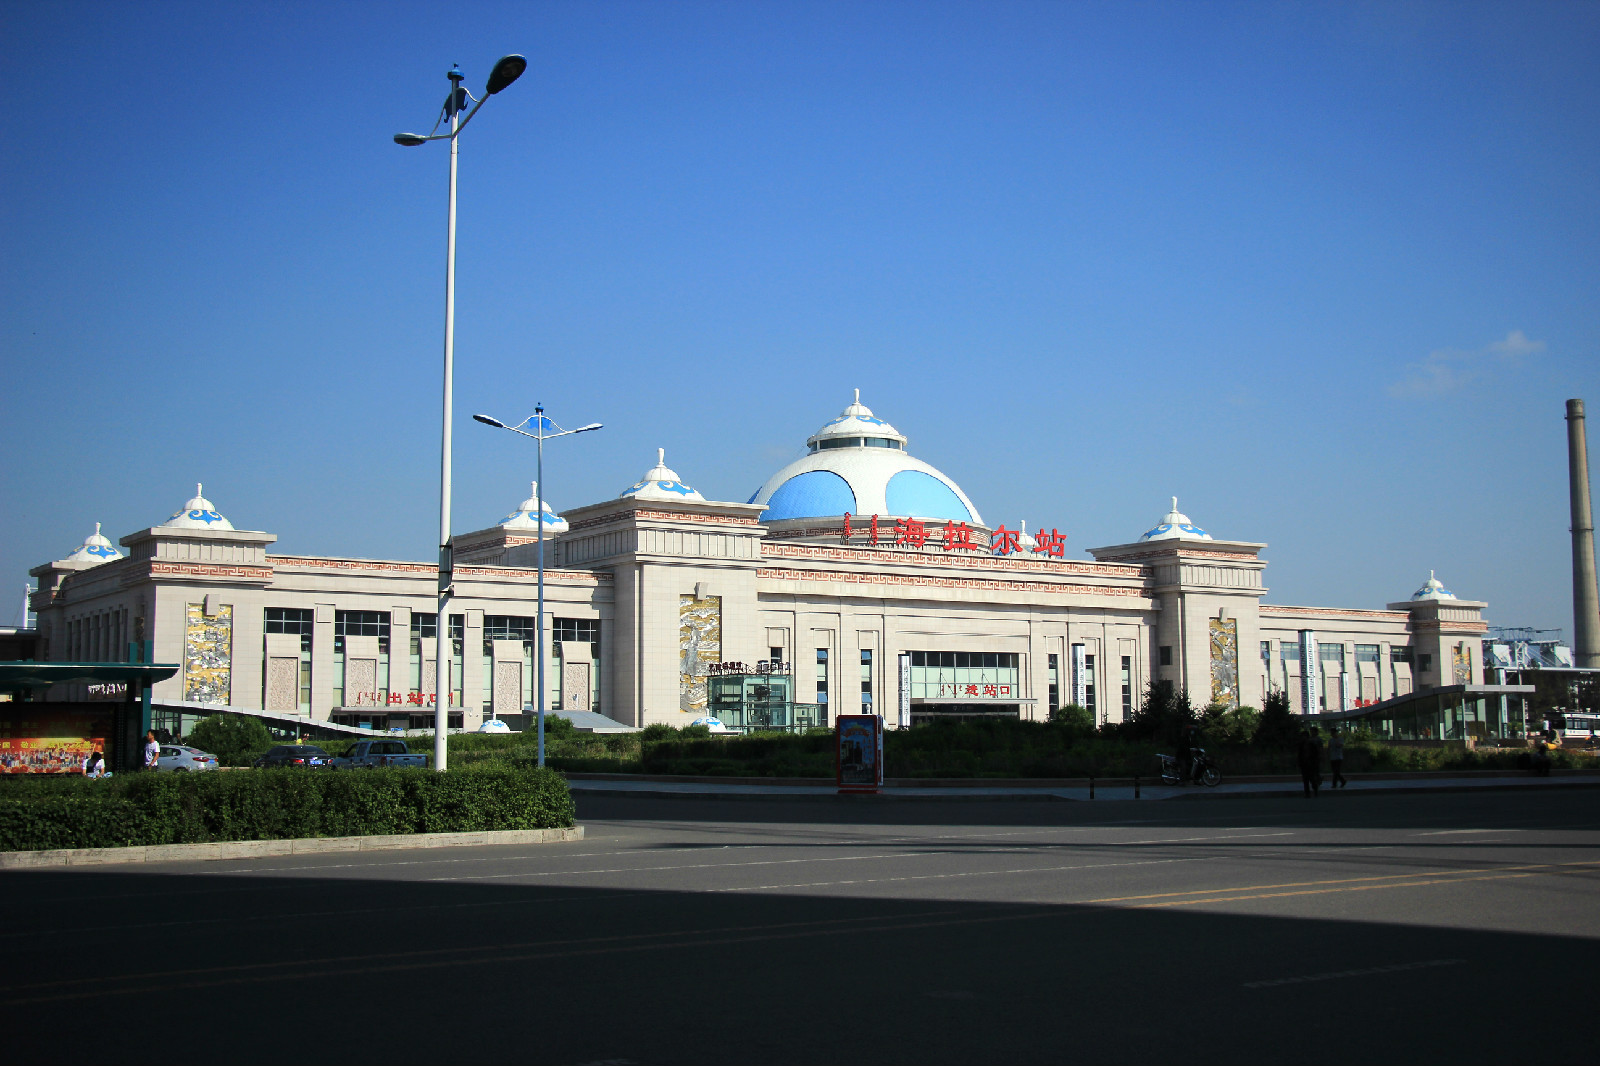 站址位于内蒙古自治区呼伦贝尔市海拉尔区,隶属于中国铁路哈尔滨局